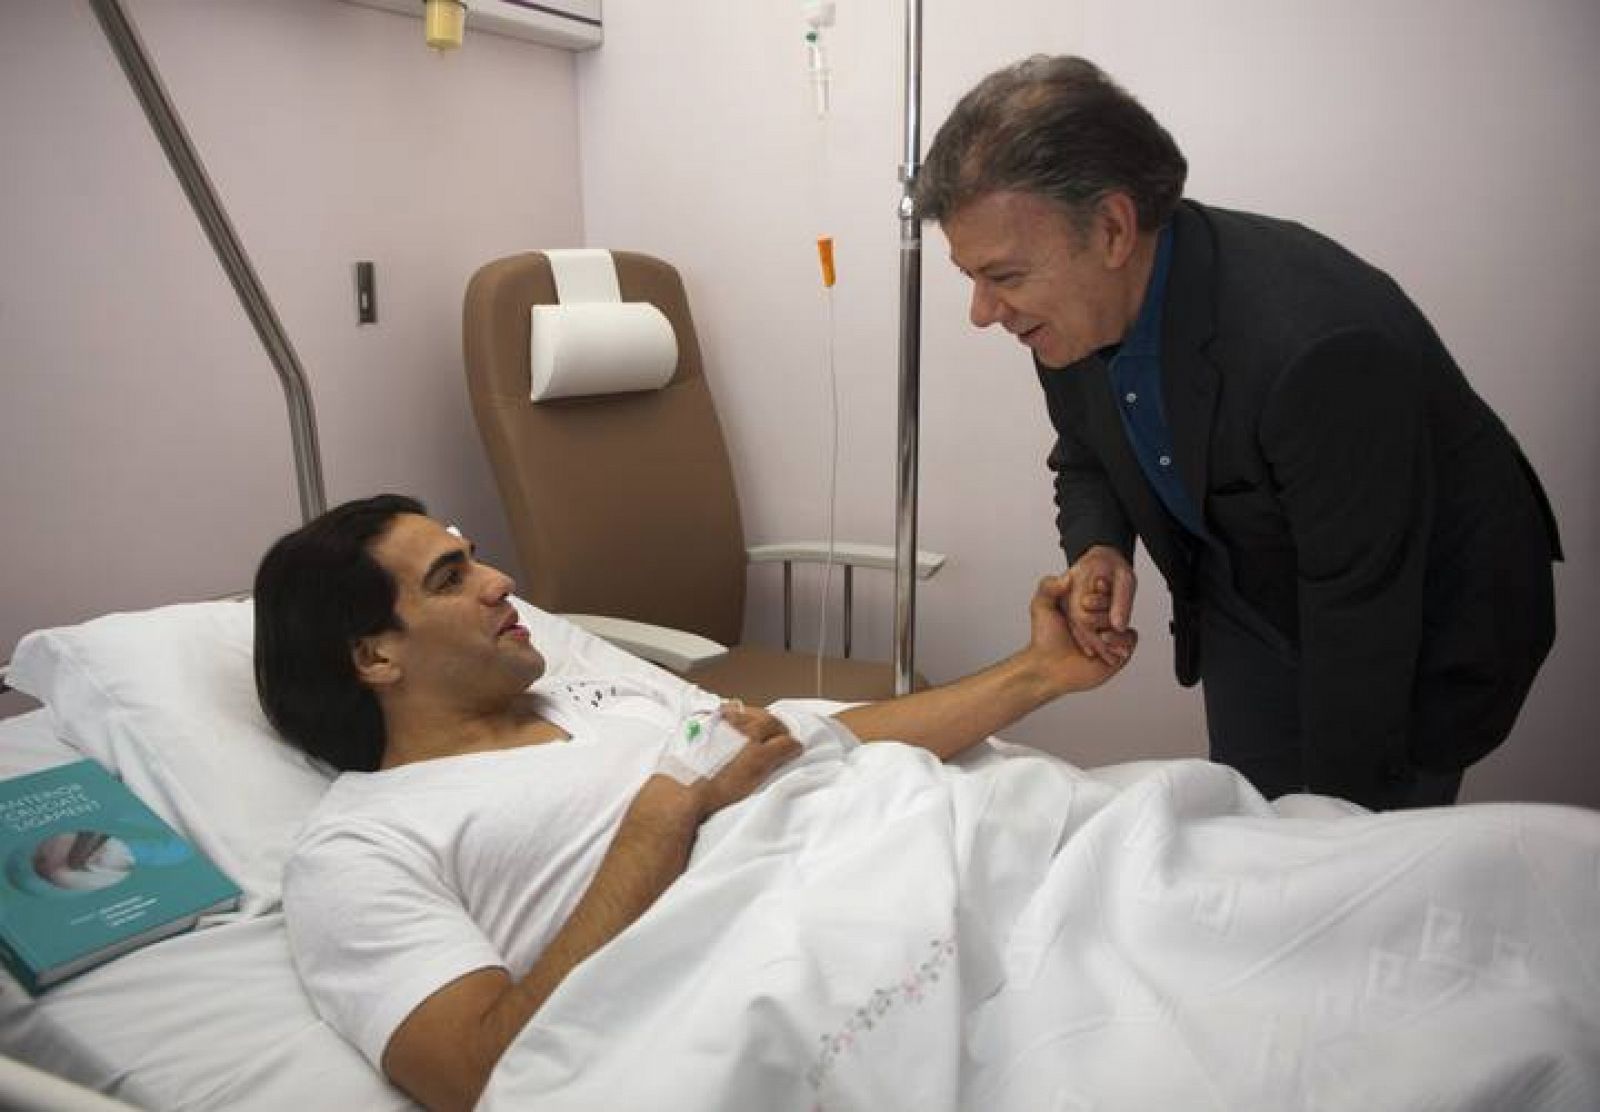 El presidente de Colombia, Juan Manuel Santos, saluda a un convaleciente Radamel Falcao